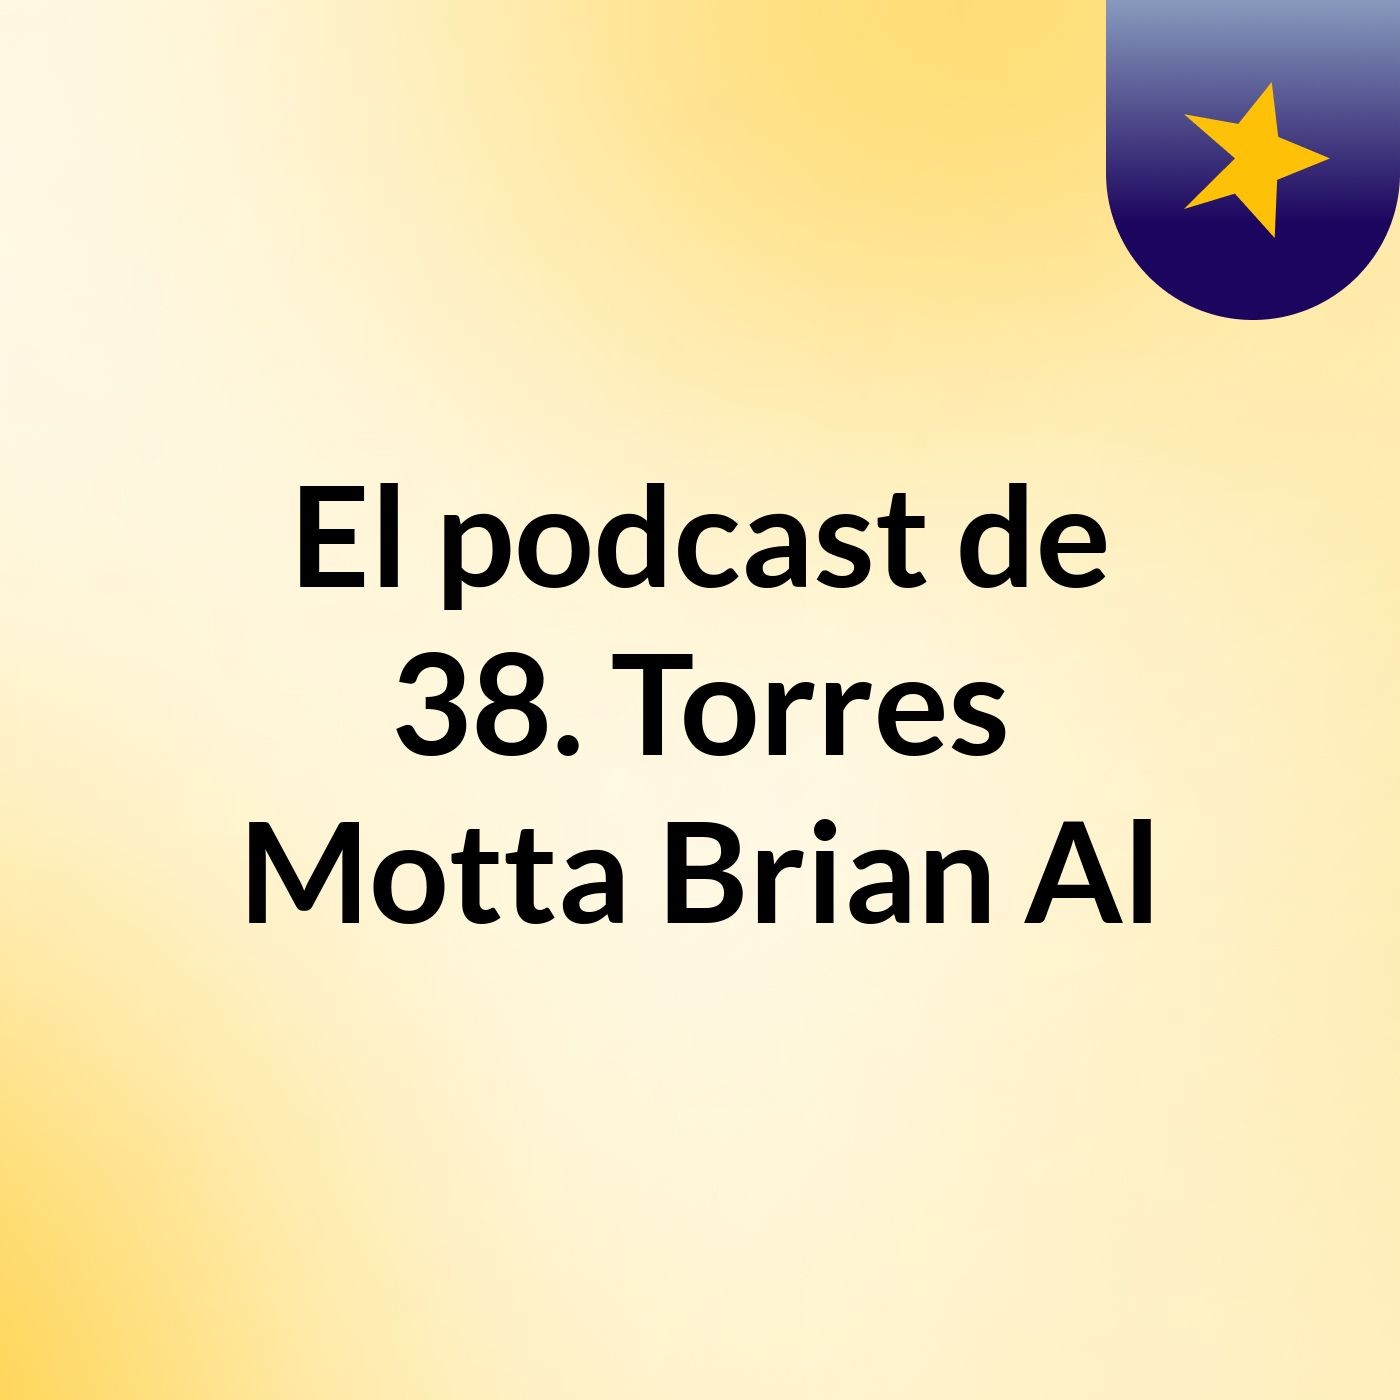 El podcast de 38. Torres Motta, Brian Al